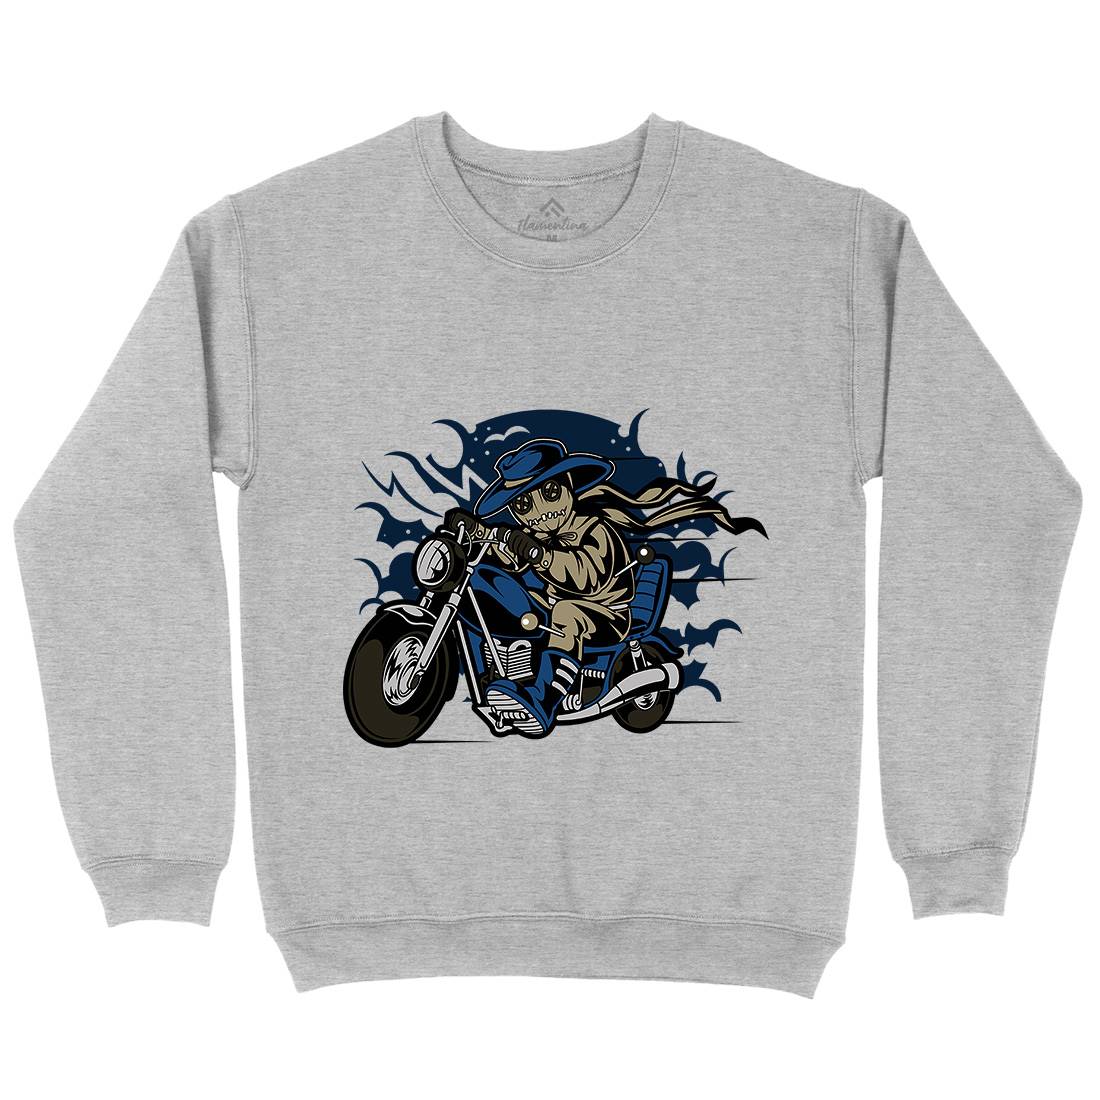 Voodoo Doll Biker Kids Crew Neck Sweatshirt Motorcycles C469